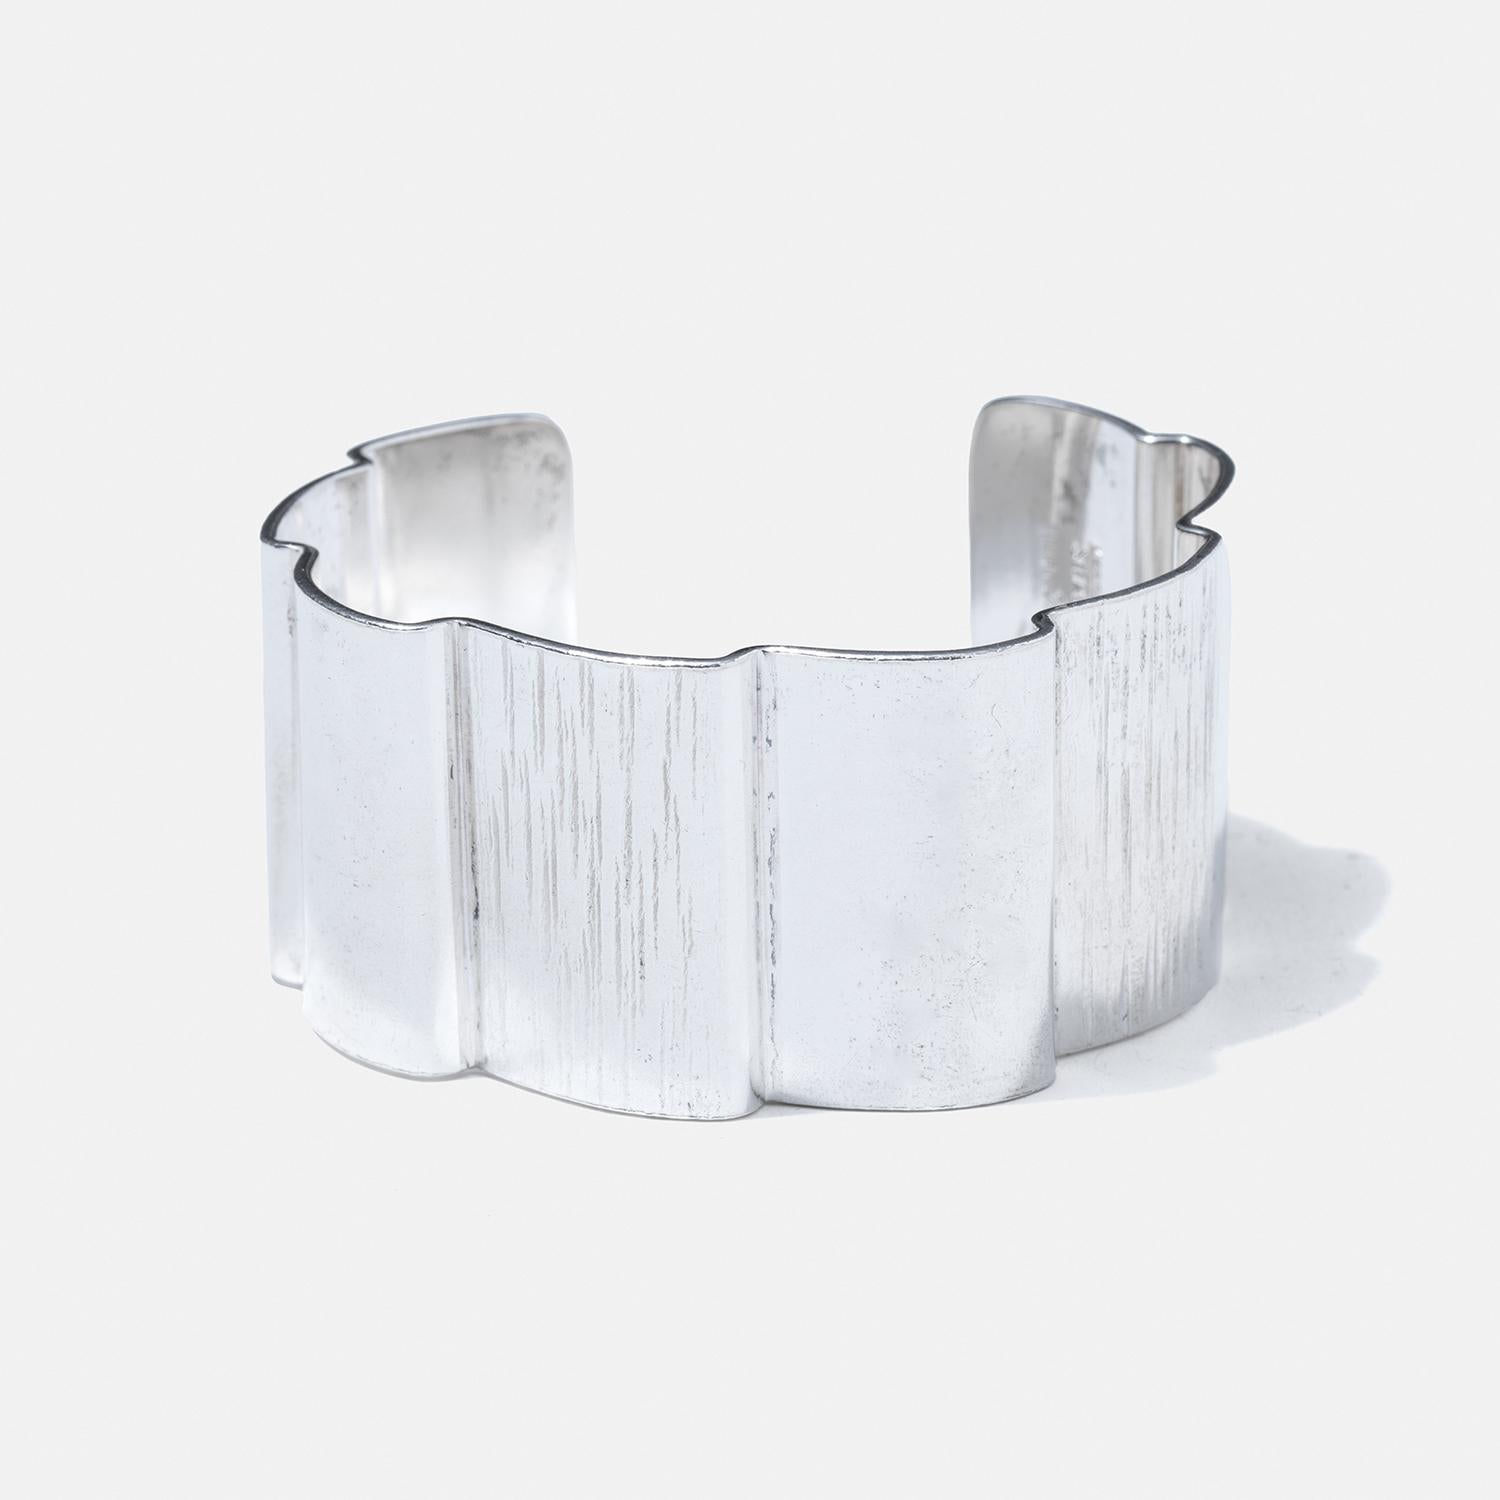 Ce bracelet manchette en argent sterling présente un design ondulé unique qui ajoute un élément visuel dynamique à sa structure. Elle présente une largeur importante, ce qui lui confère une présence audacieuse et proéminente au poignet. La surface